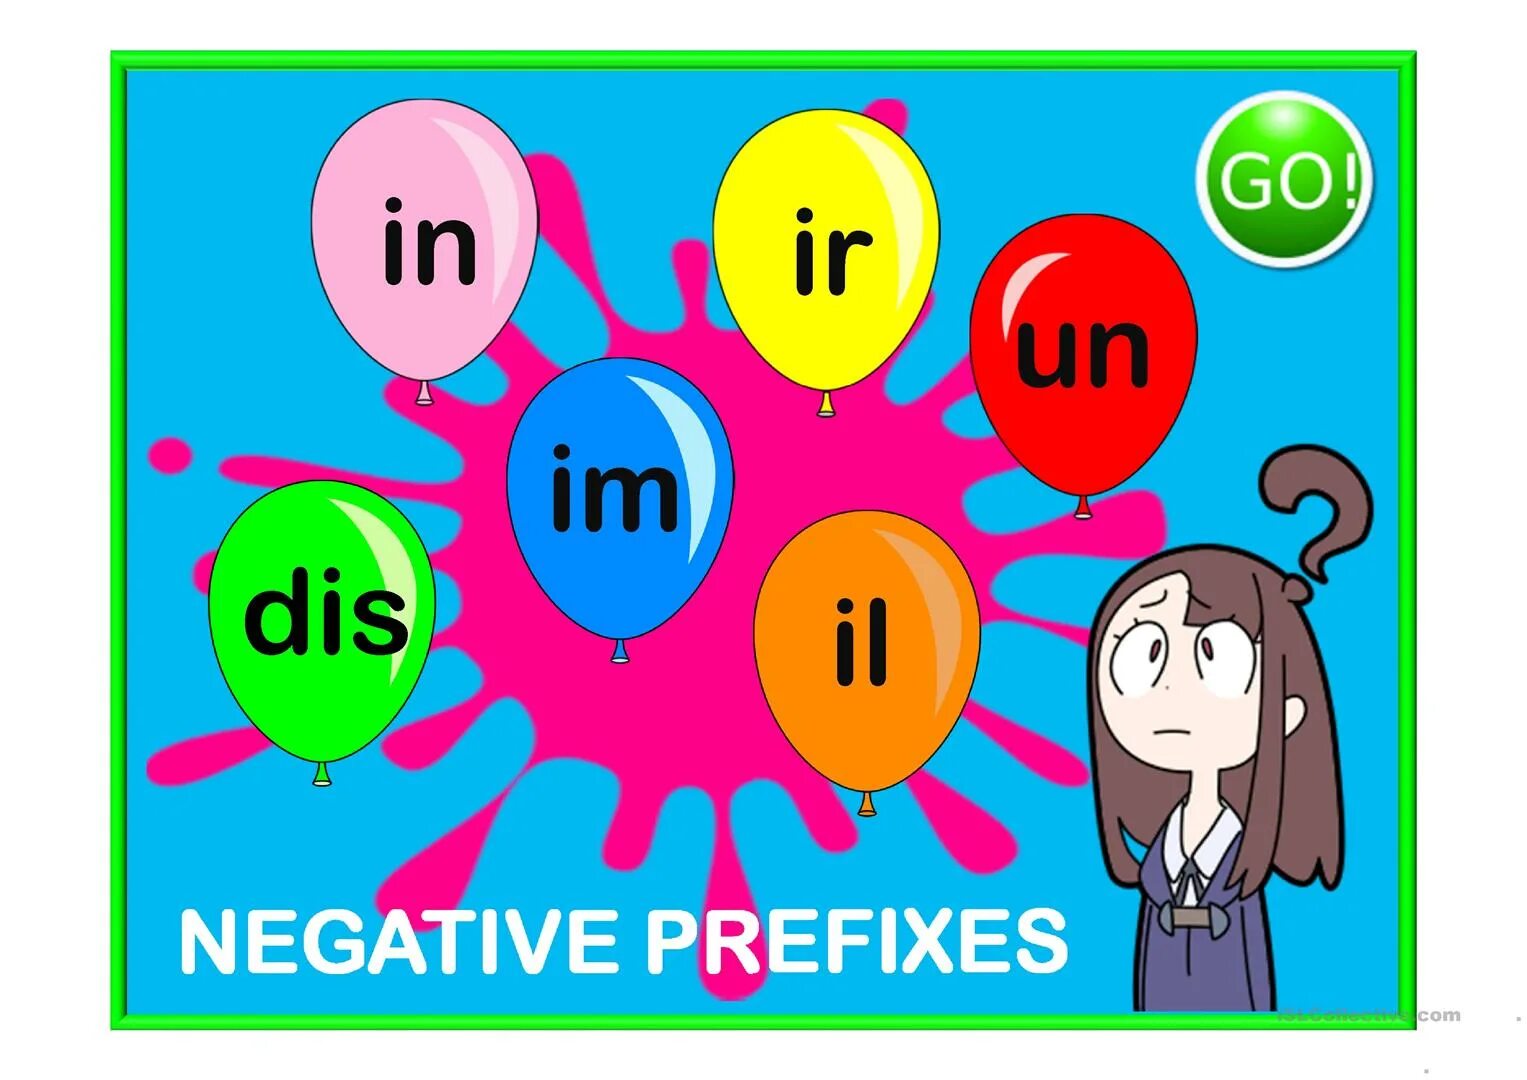 Negative prefixes. Negative prefixes un, dis, in, im, ir. Negative prefixes правило. Negative prefixes - отрицательные приставки. Make adjectives negative